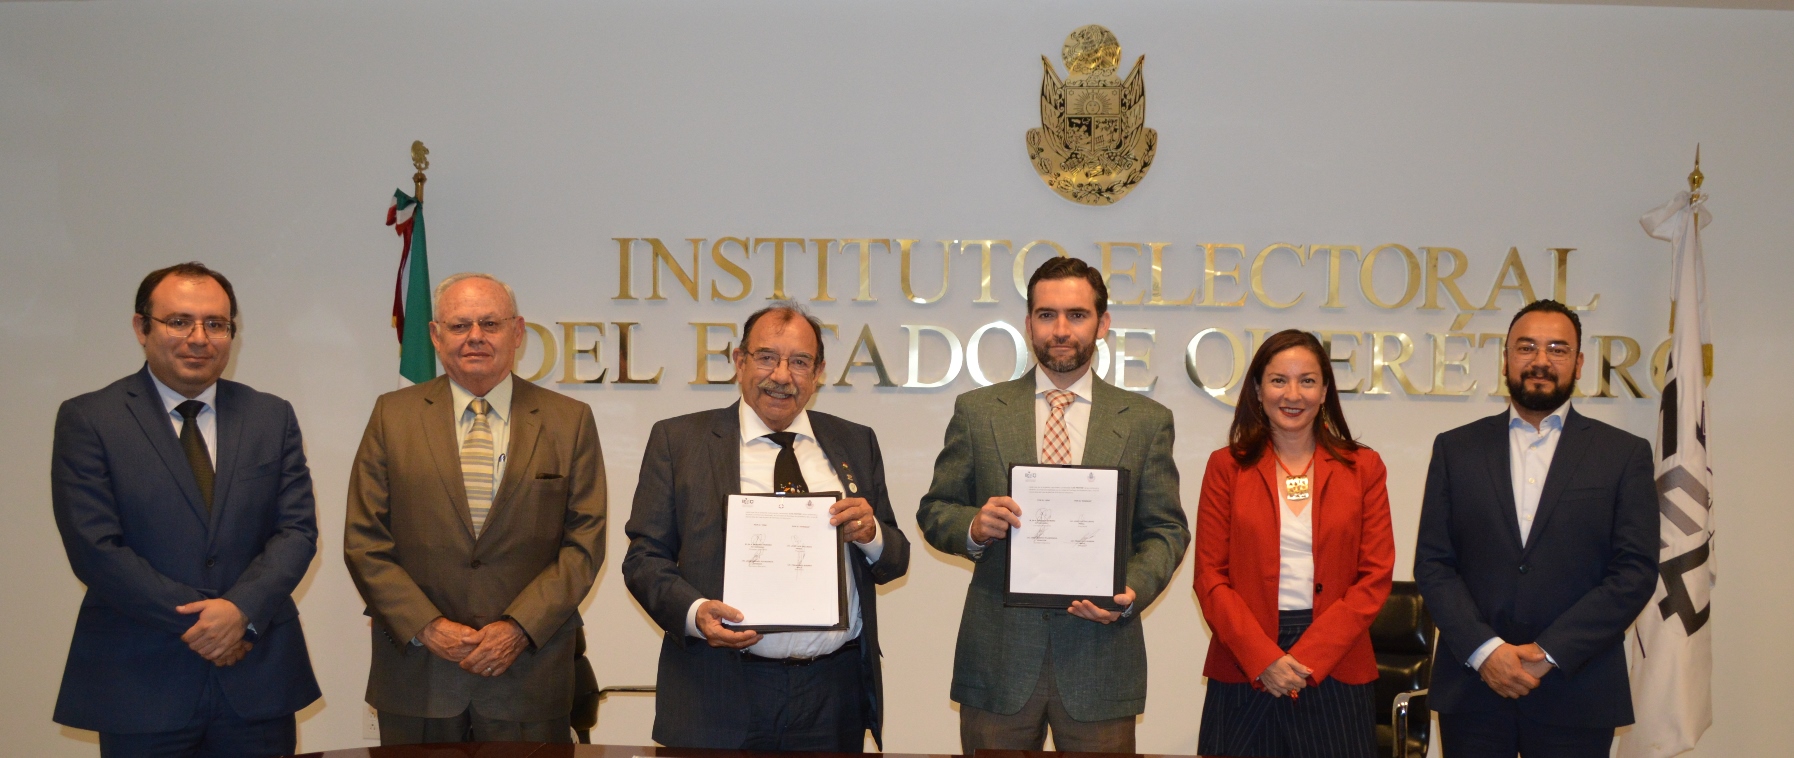  Instituto Electoral de Querétaro firma convenio con Consejo de Notarios